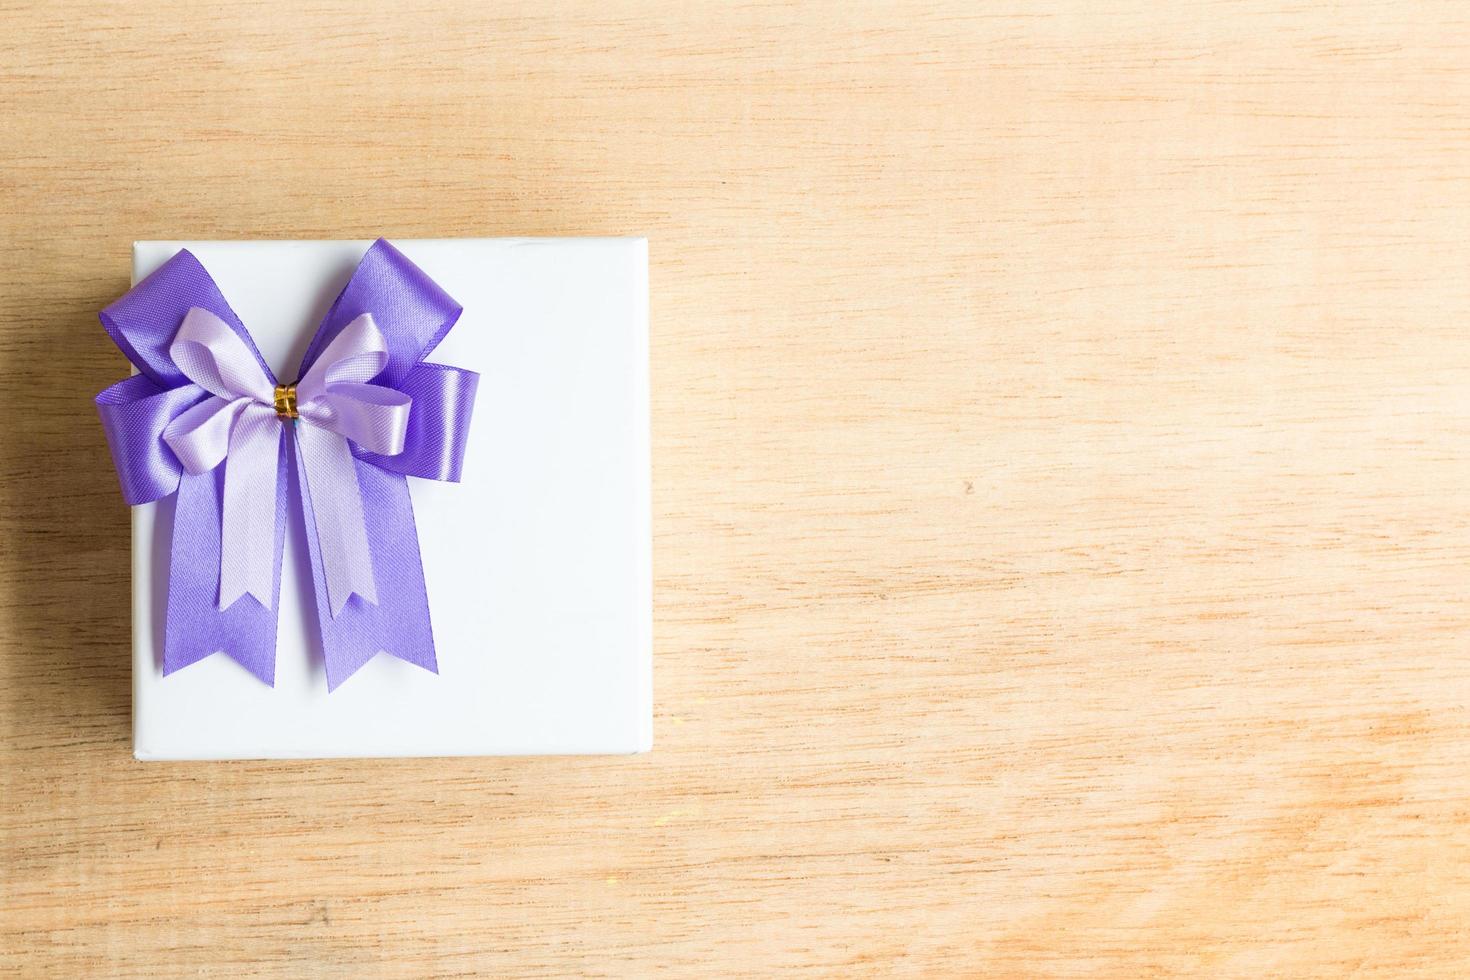 fiocco di nastro viola su una confezione regalo bianca su uno sfondo di legno foto